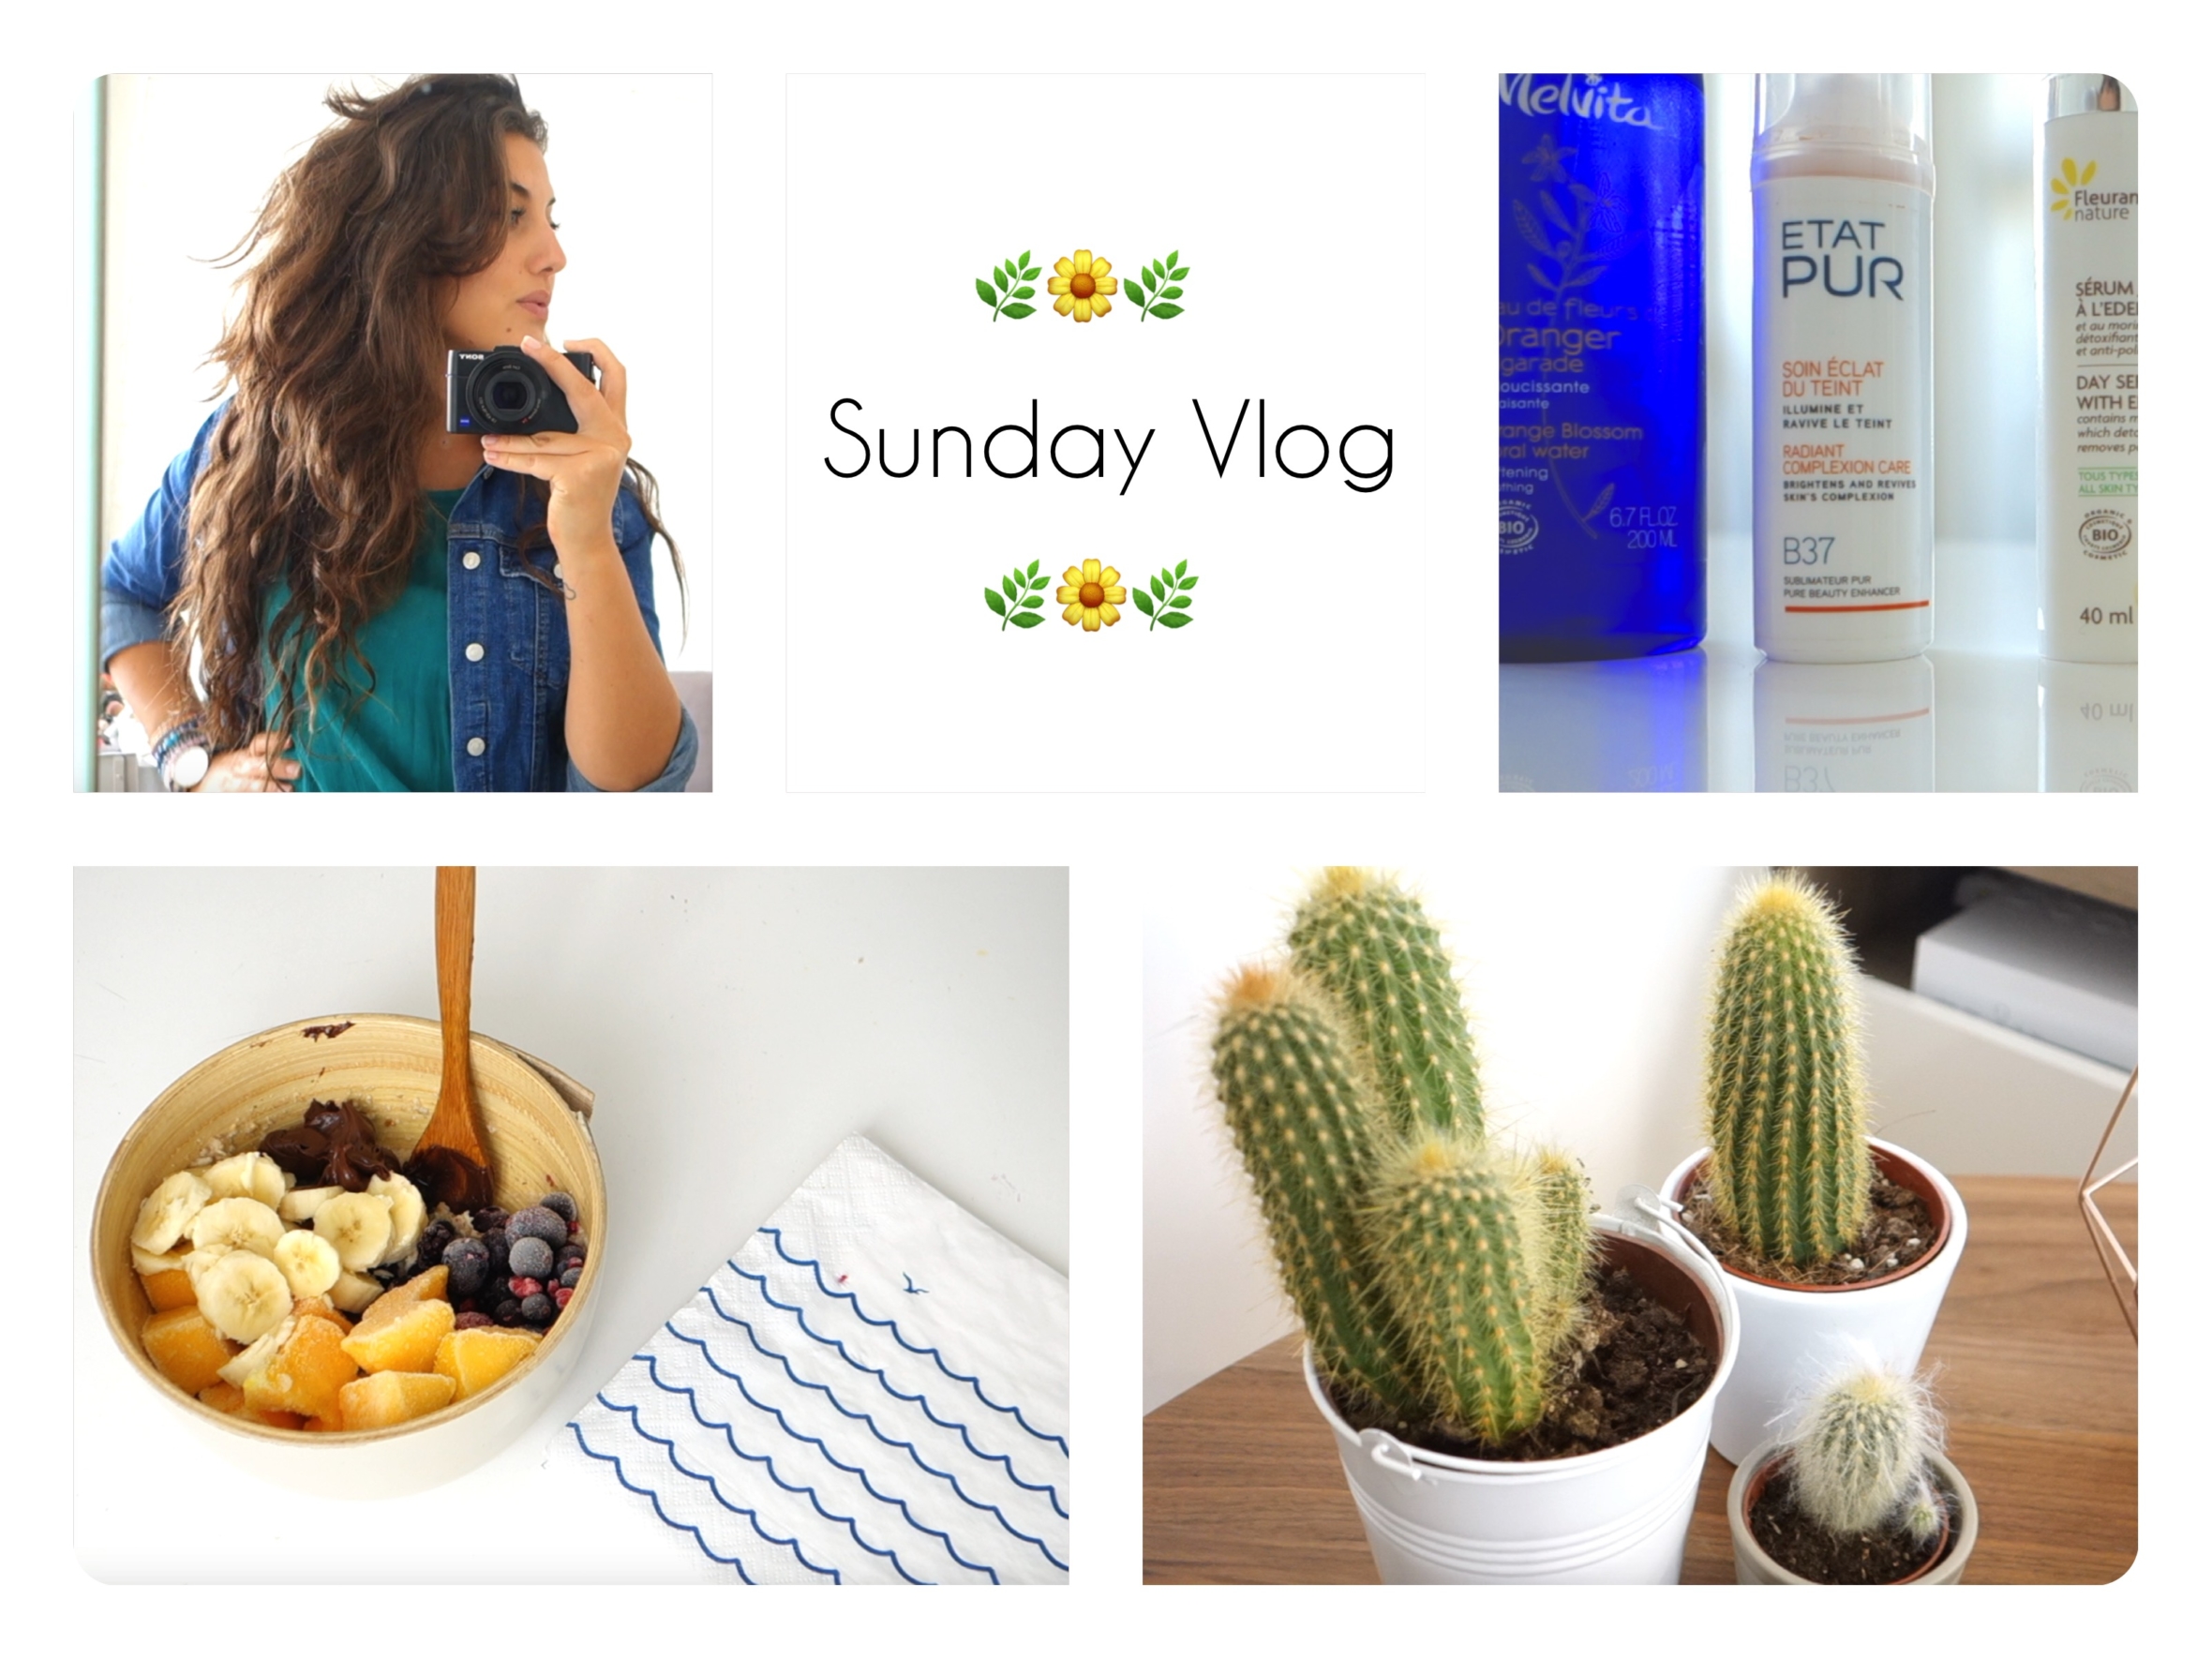 Lire la suite à propos de l’article Yoga, cocooning, healthy food, Paris, beauté ❀ Sunday Vlog